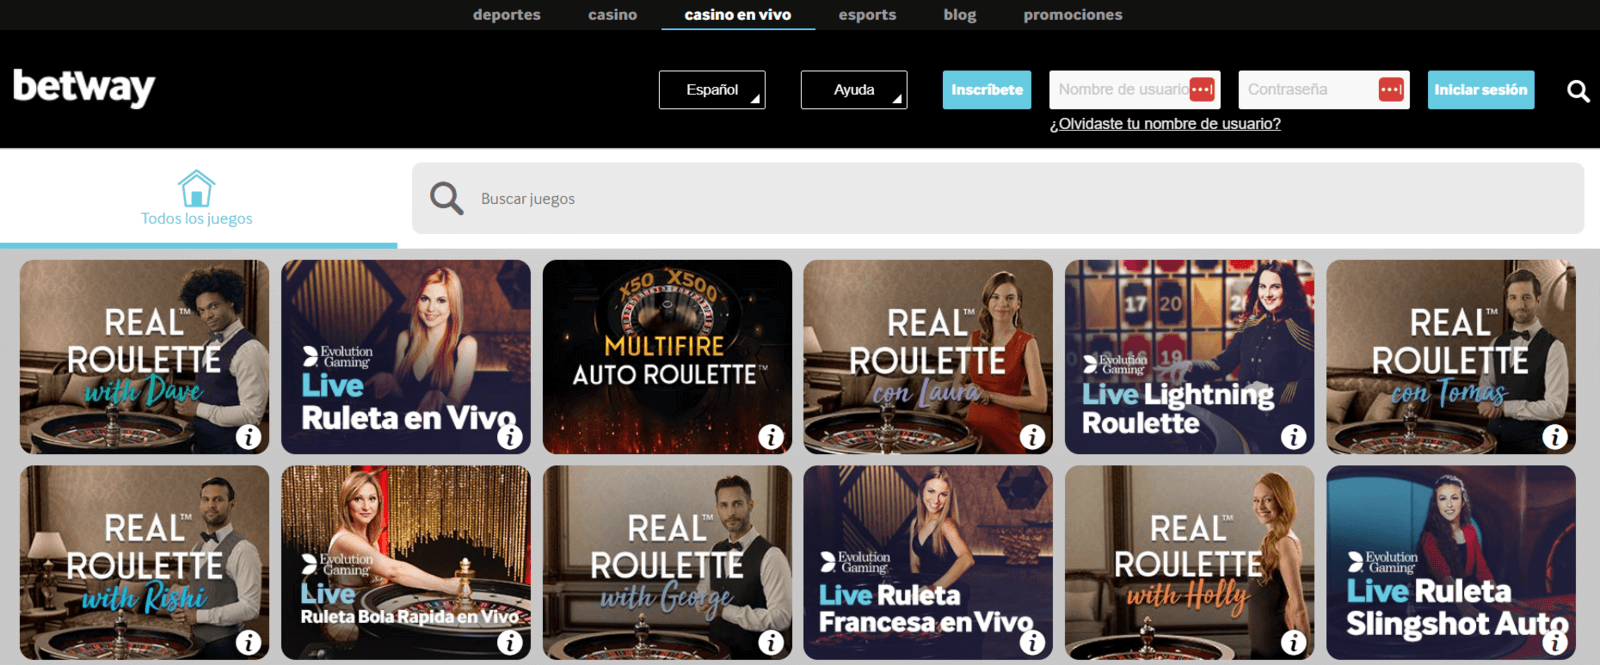 Betway casino en vivo online con dinero real de España